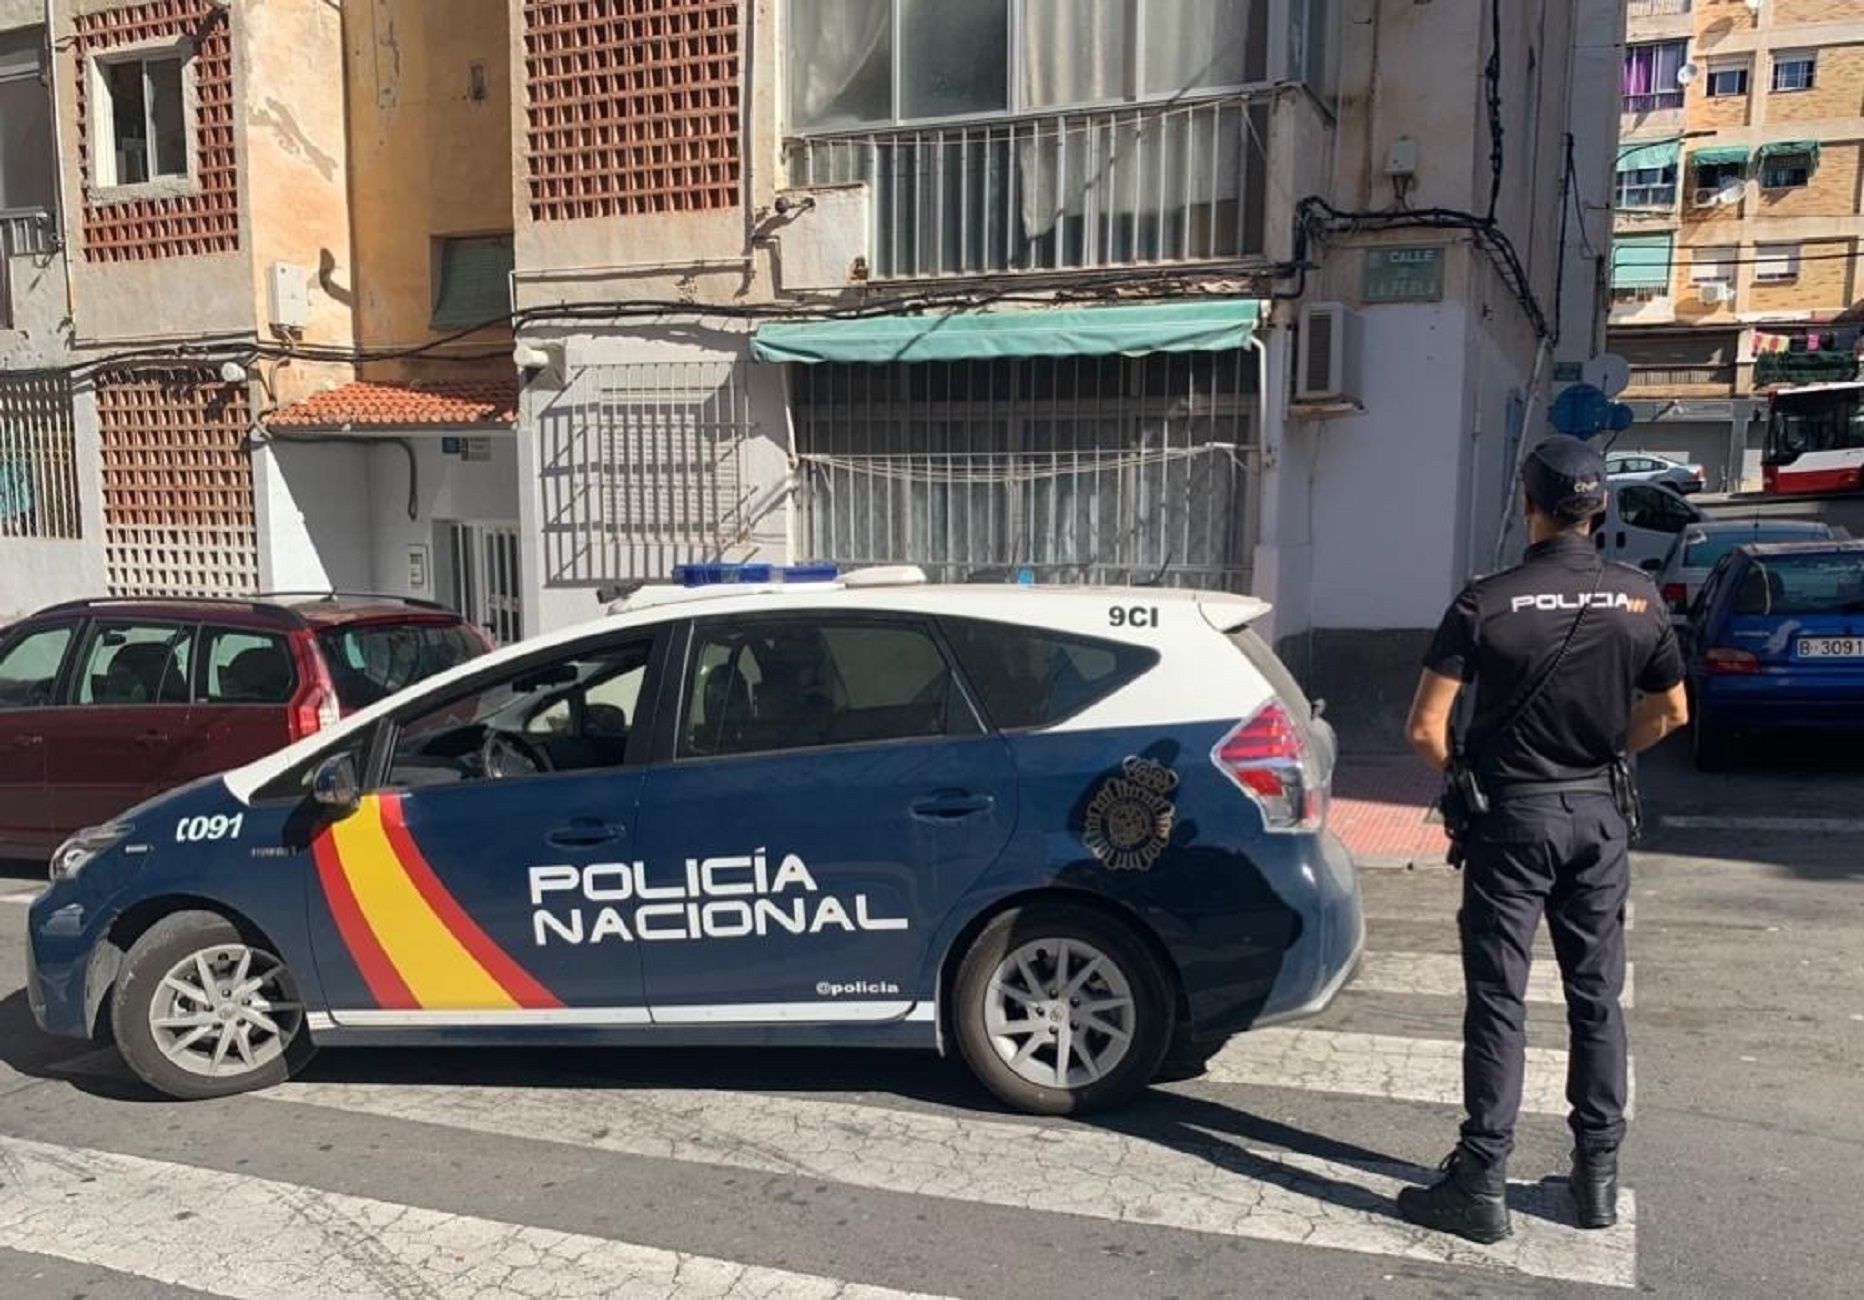 La Policía Nacional ha comunicado la muerte de Noemí Pérez a su familia / Europa Press